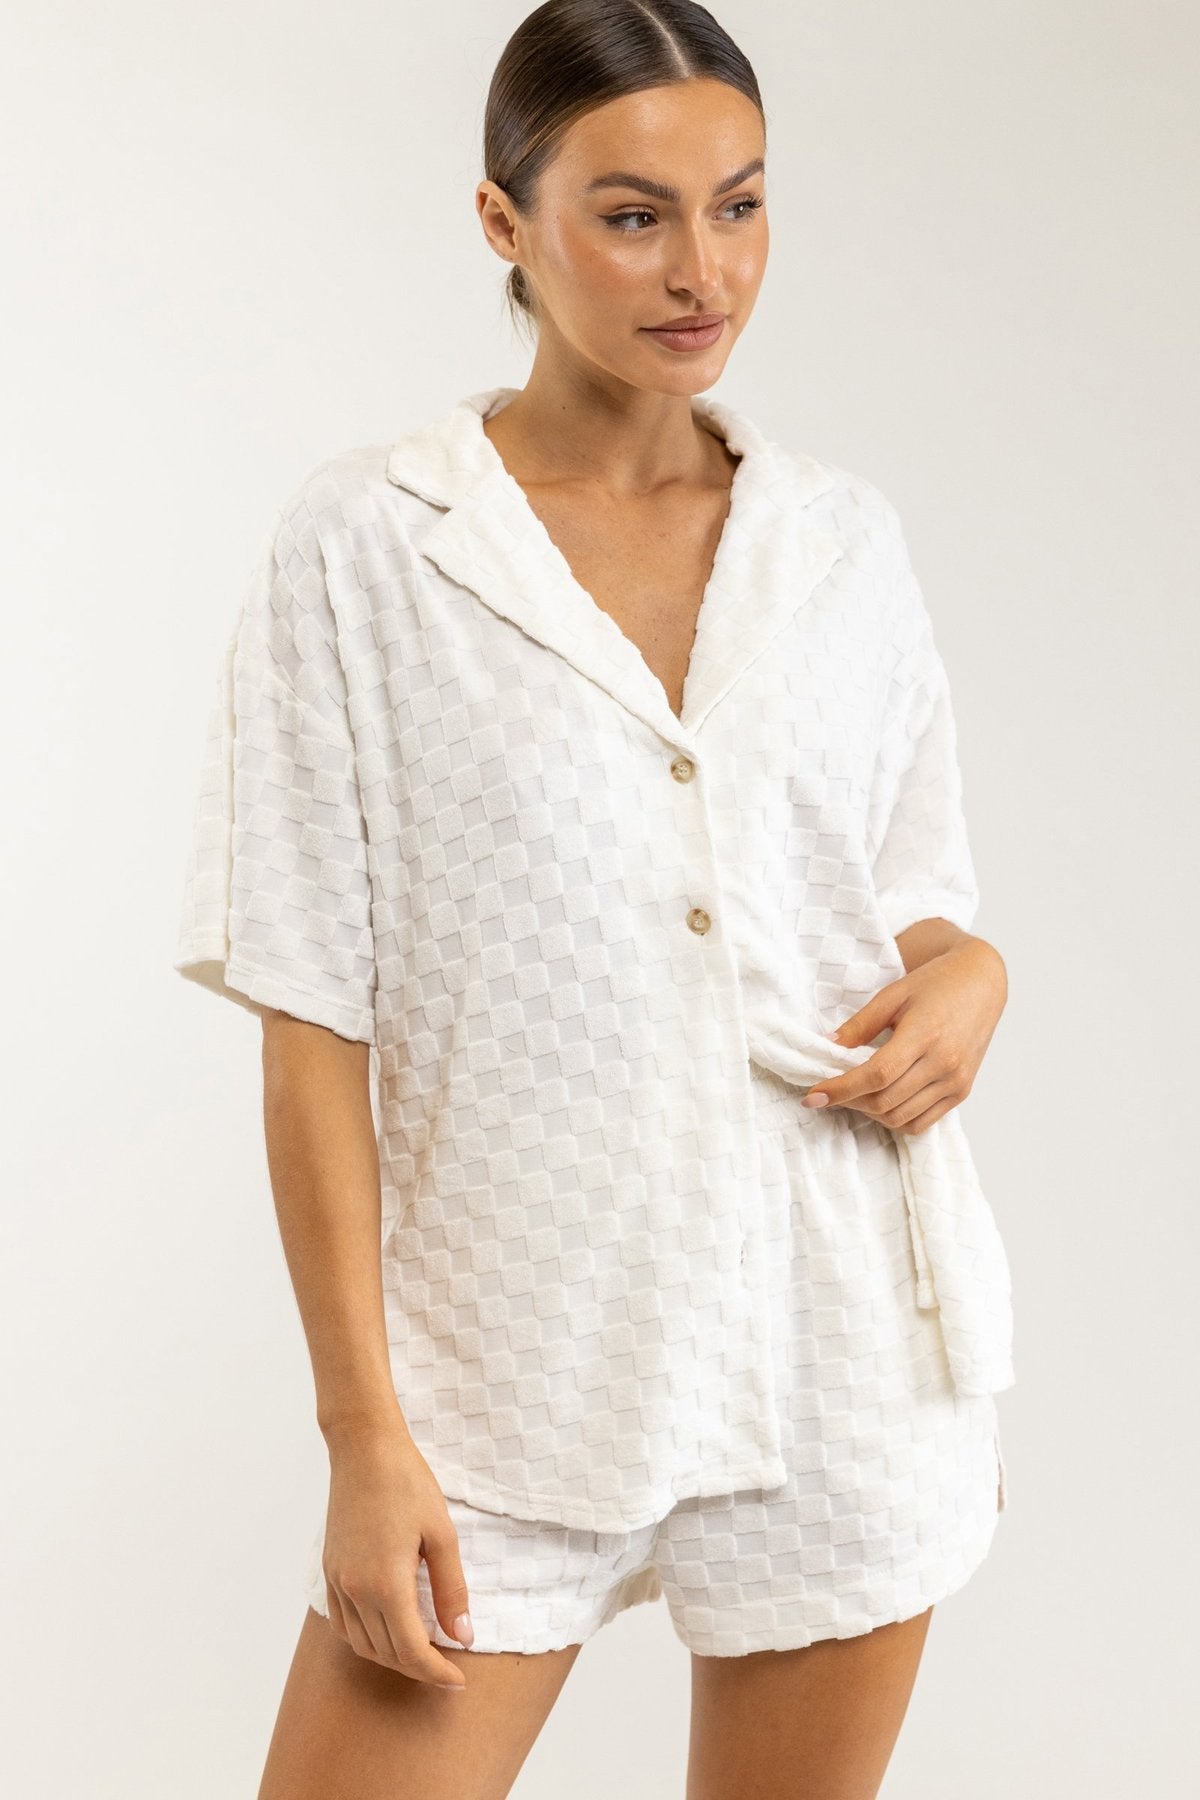 商品の通販 TTT MSW cotton knit jacquard shirts - トップス